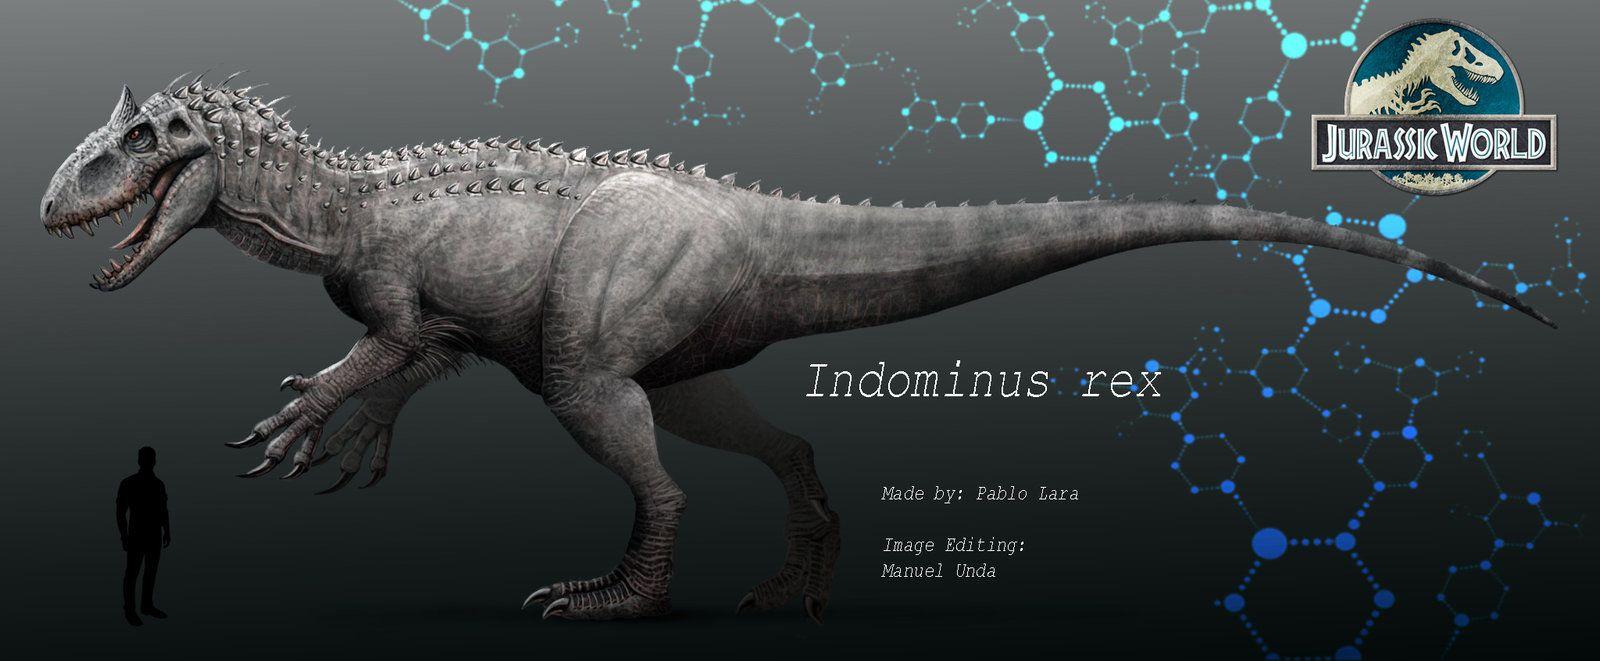 jurassic world indominus rex   Instagraper Wallpapers Jurassic